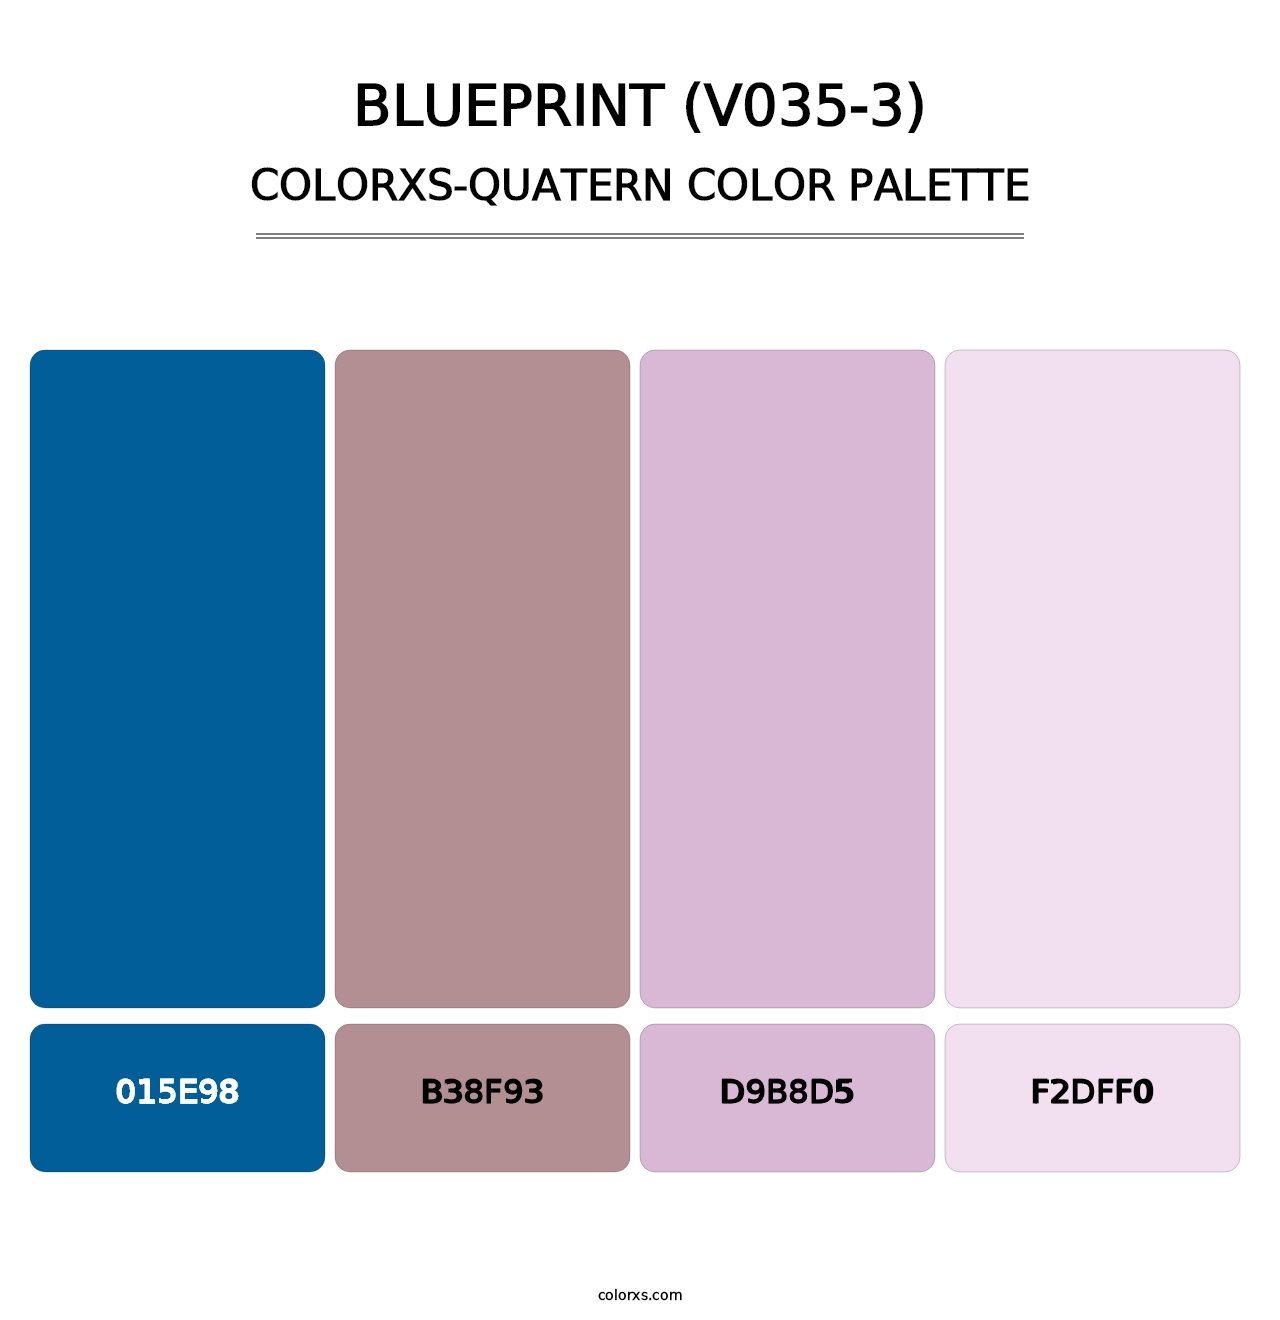 Blueprint (V035-3) - Colorxs Quatern Palette